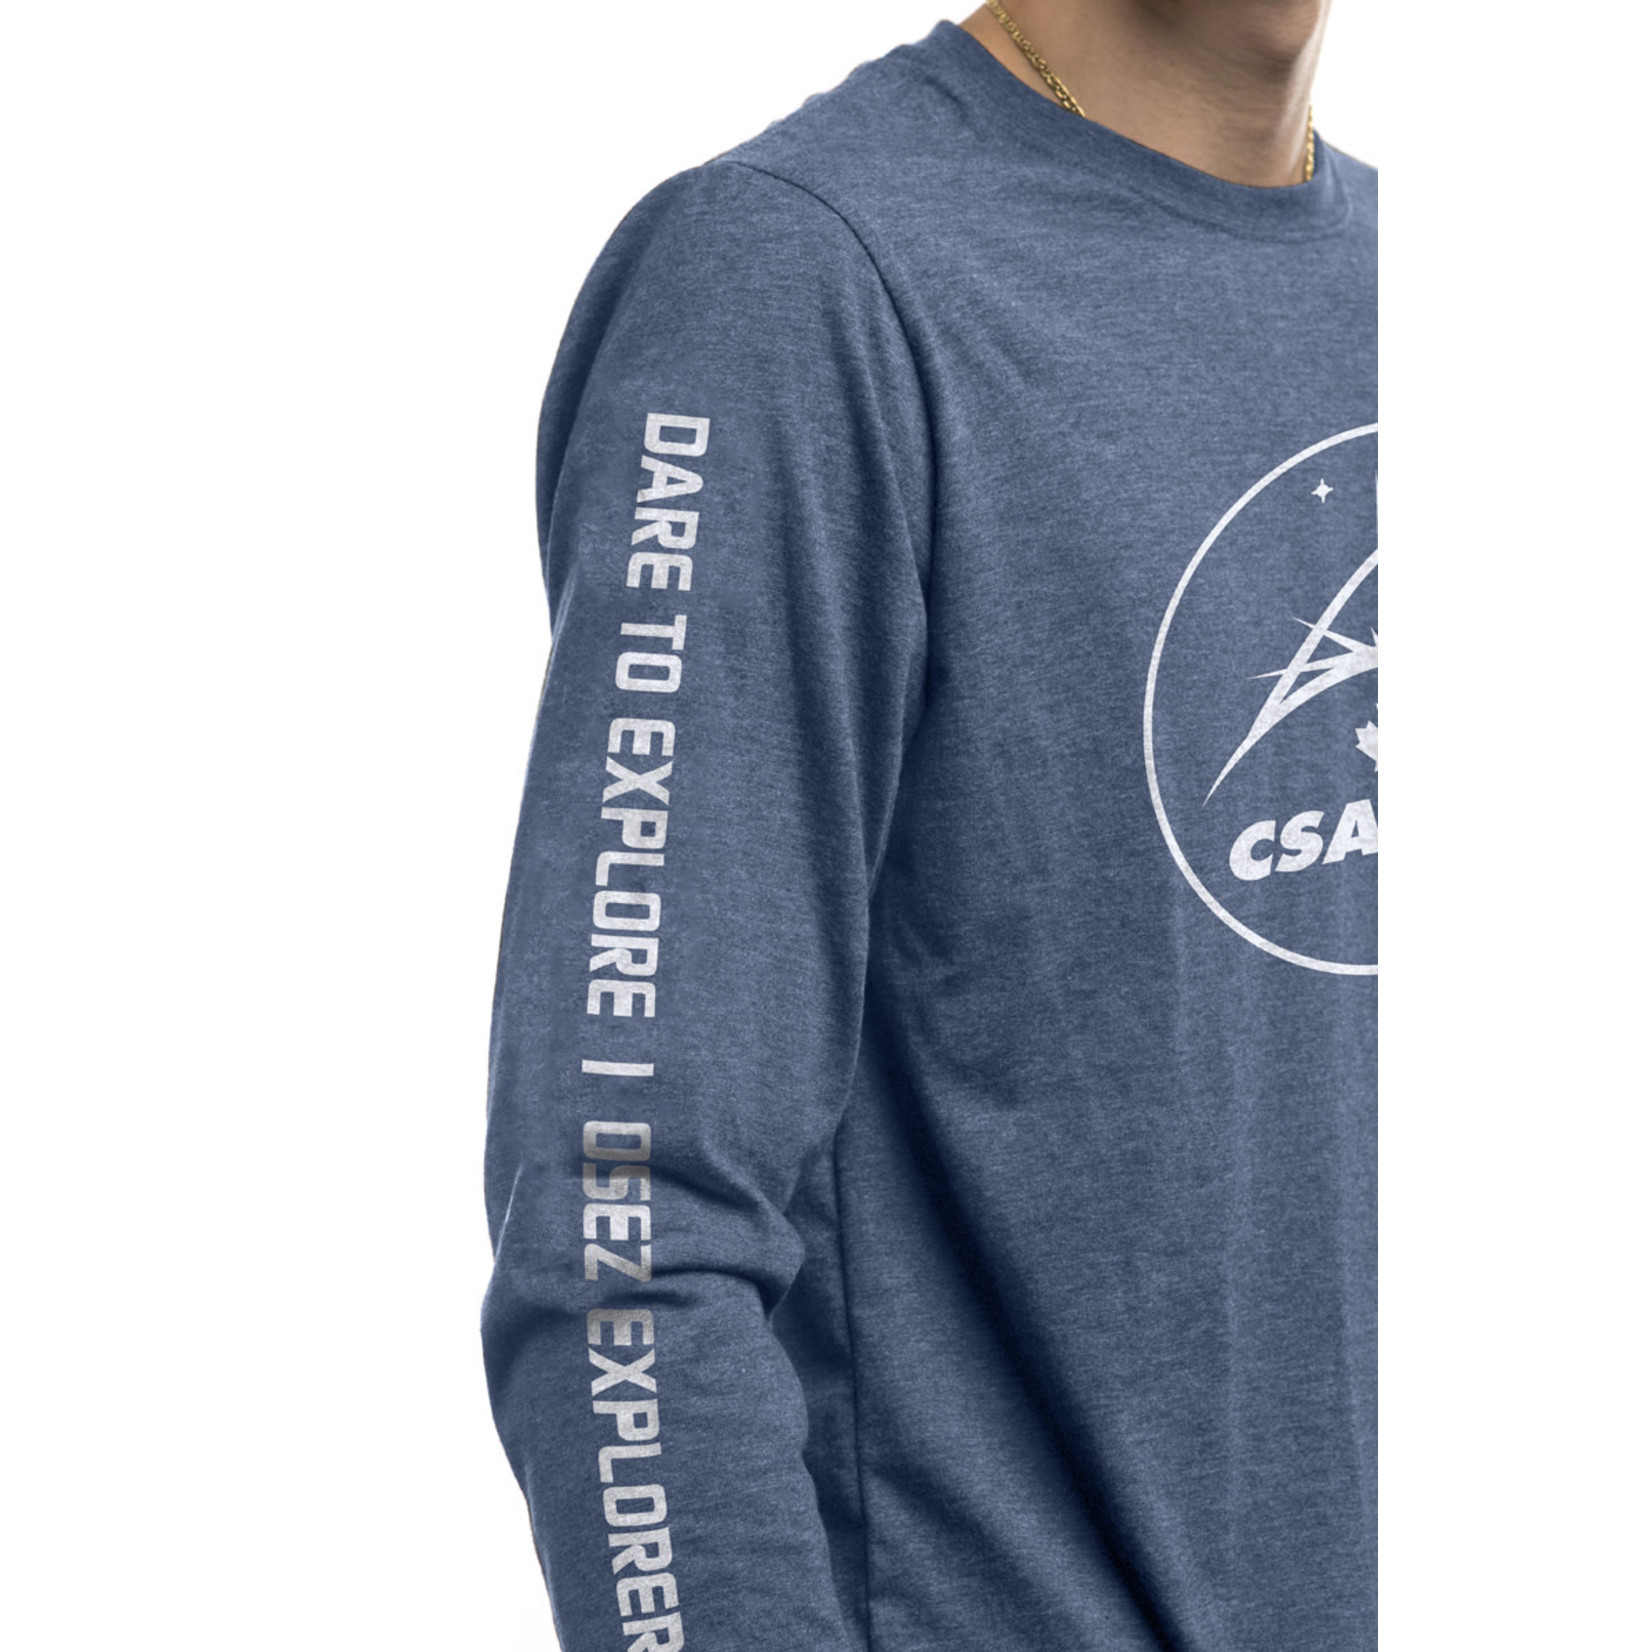 Canadian Space Agency ASC Ose explorer la chemise à manches longues